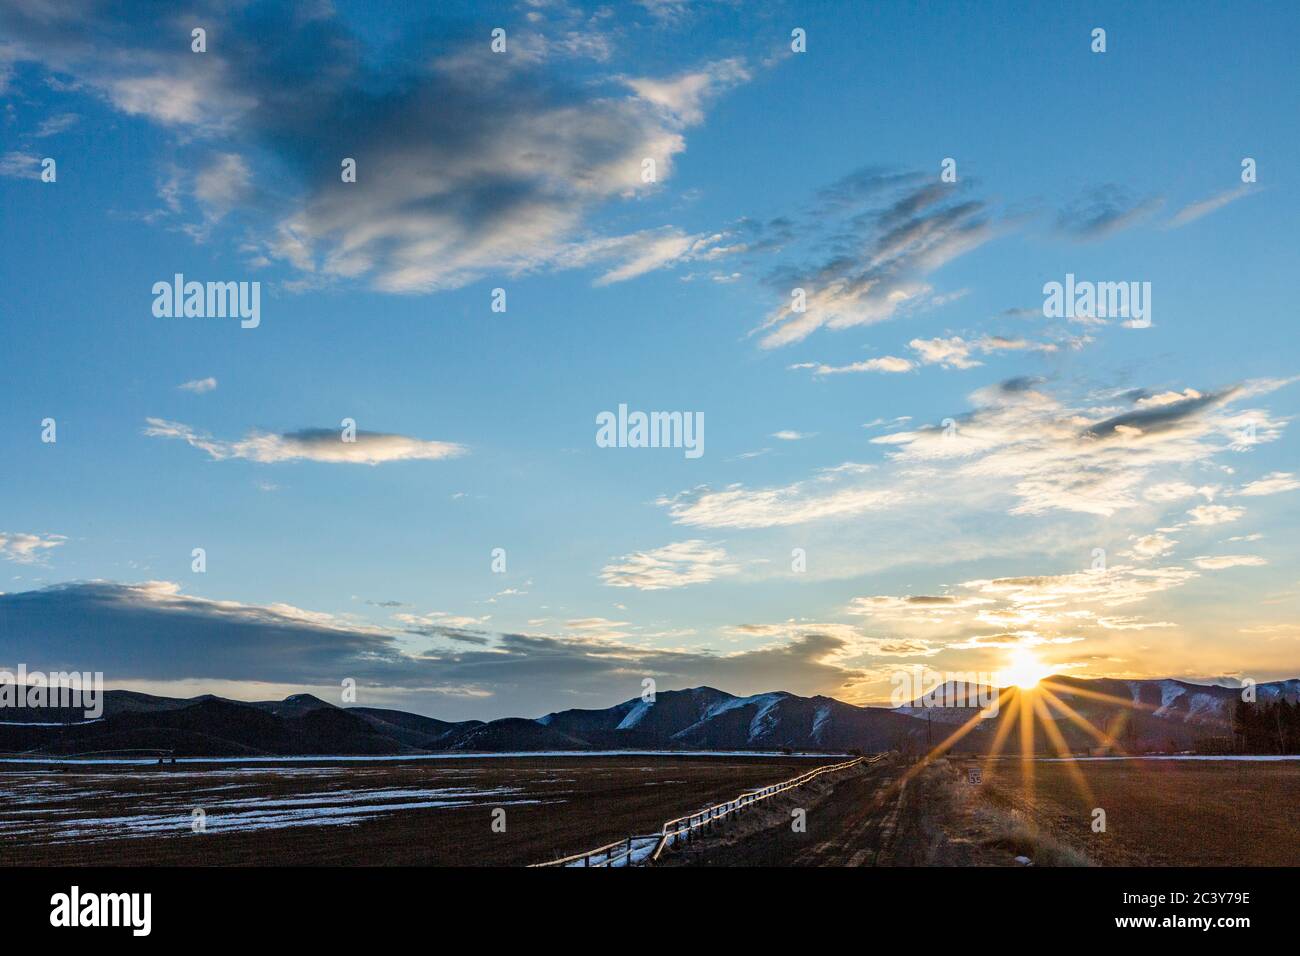 USA, Idaho, Sun Valley, Sunrise over mountains Stock Photo